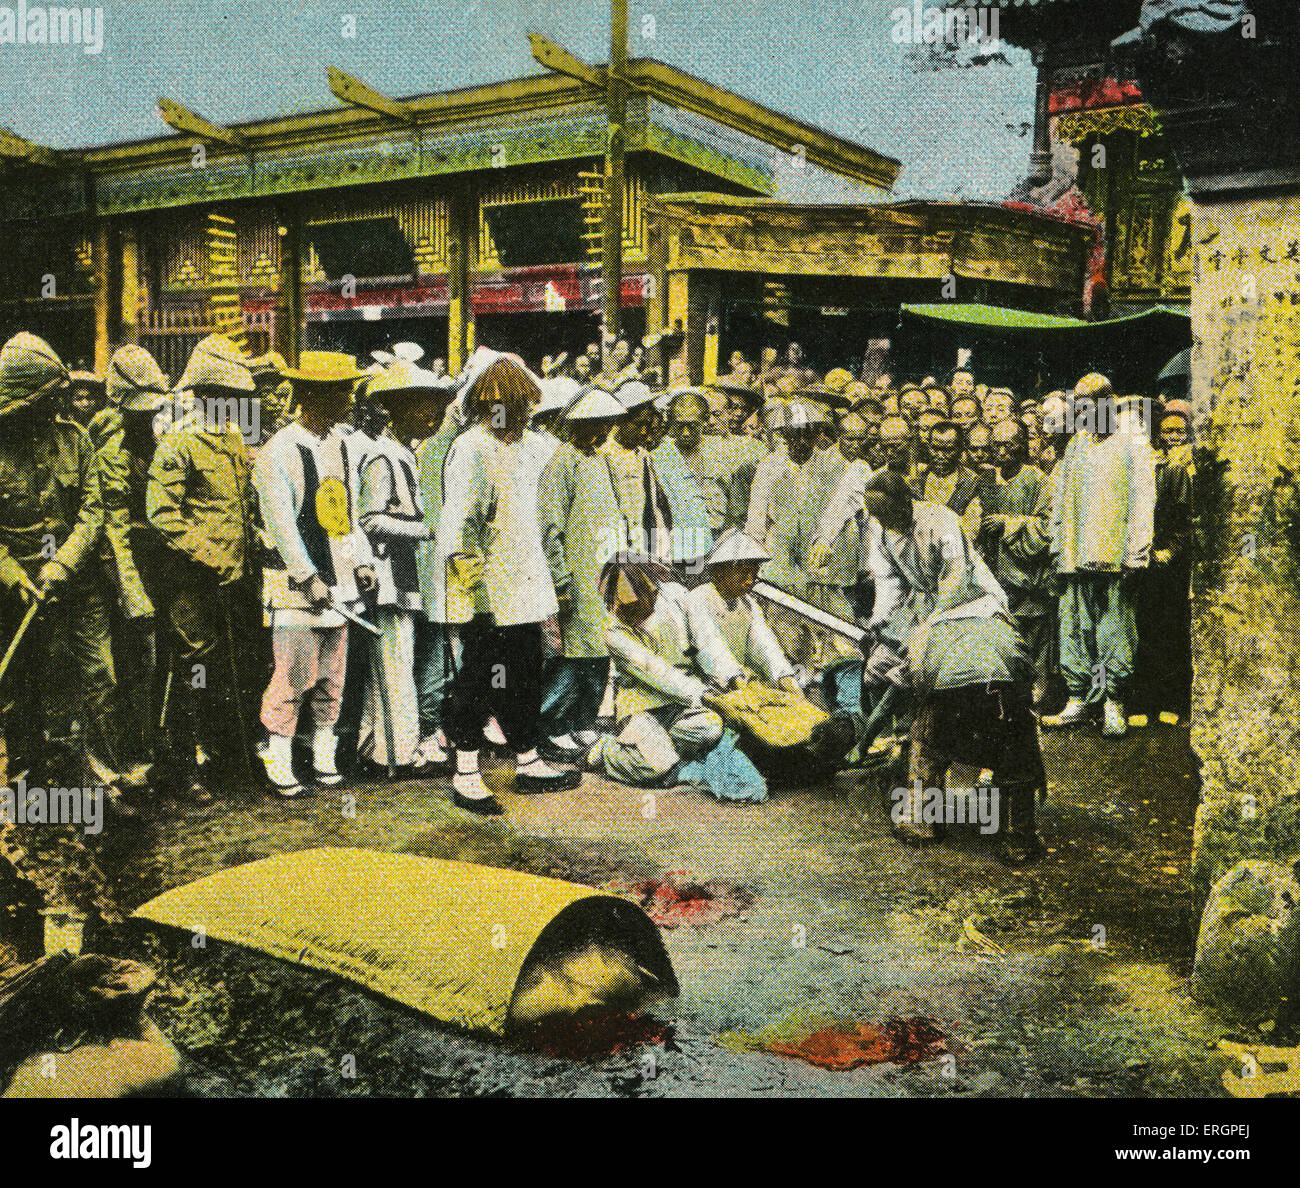 L'exécution publique, la foule observe une décapitation par l'épée. Chine, début du 20e siècle. Banque D'Images